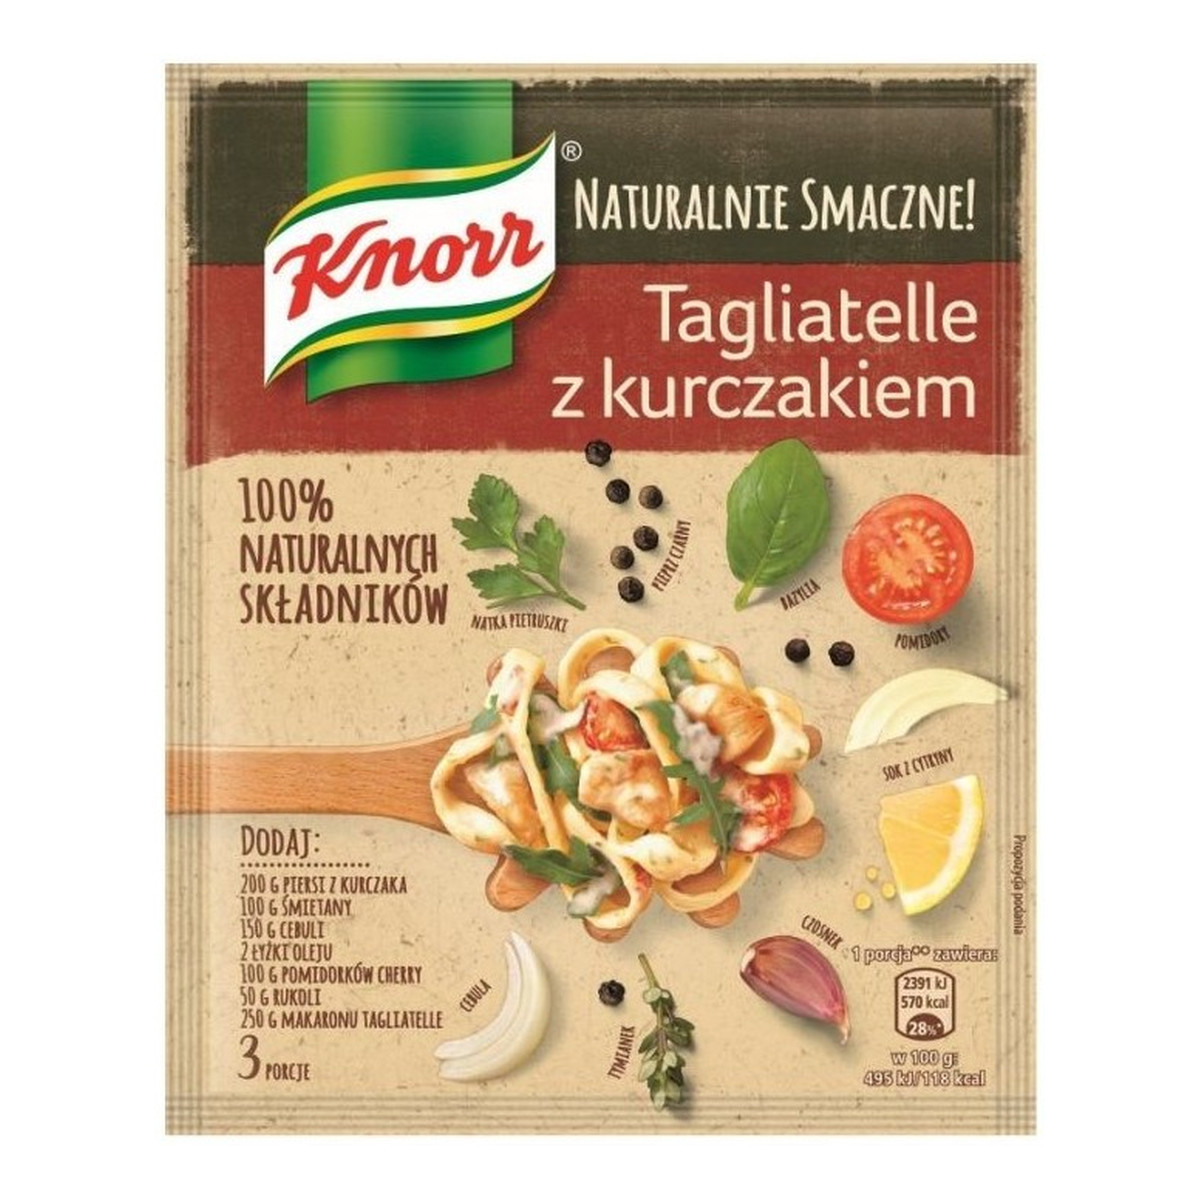 Knorr Naturalnie Smaczne! tagliatelle z kurczakiem 39g